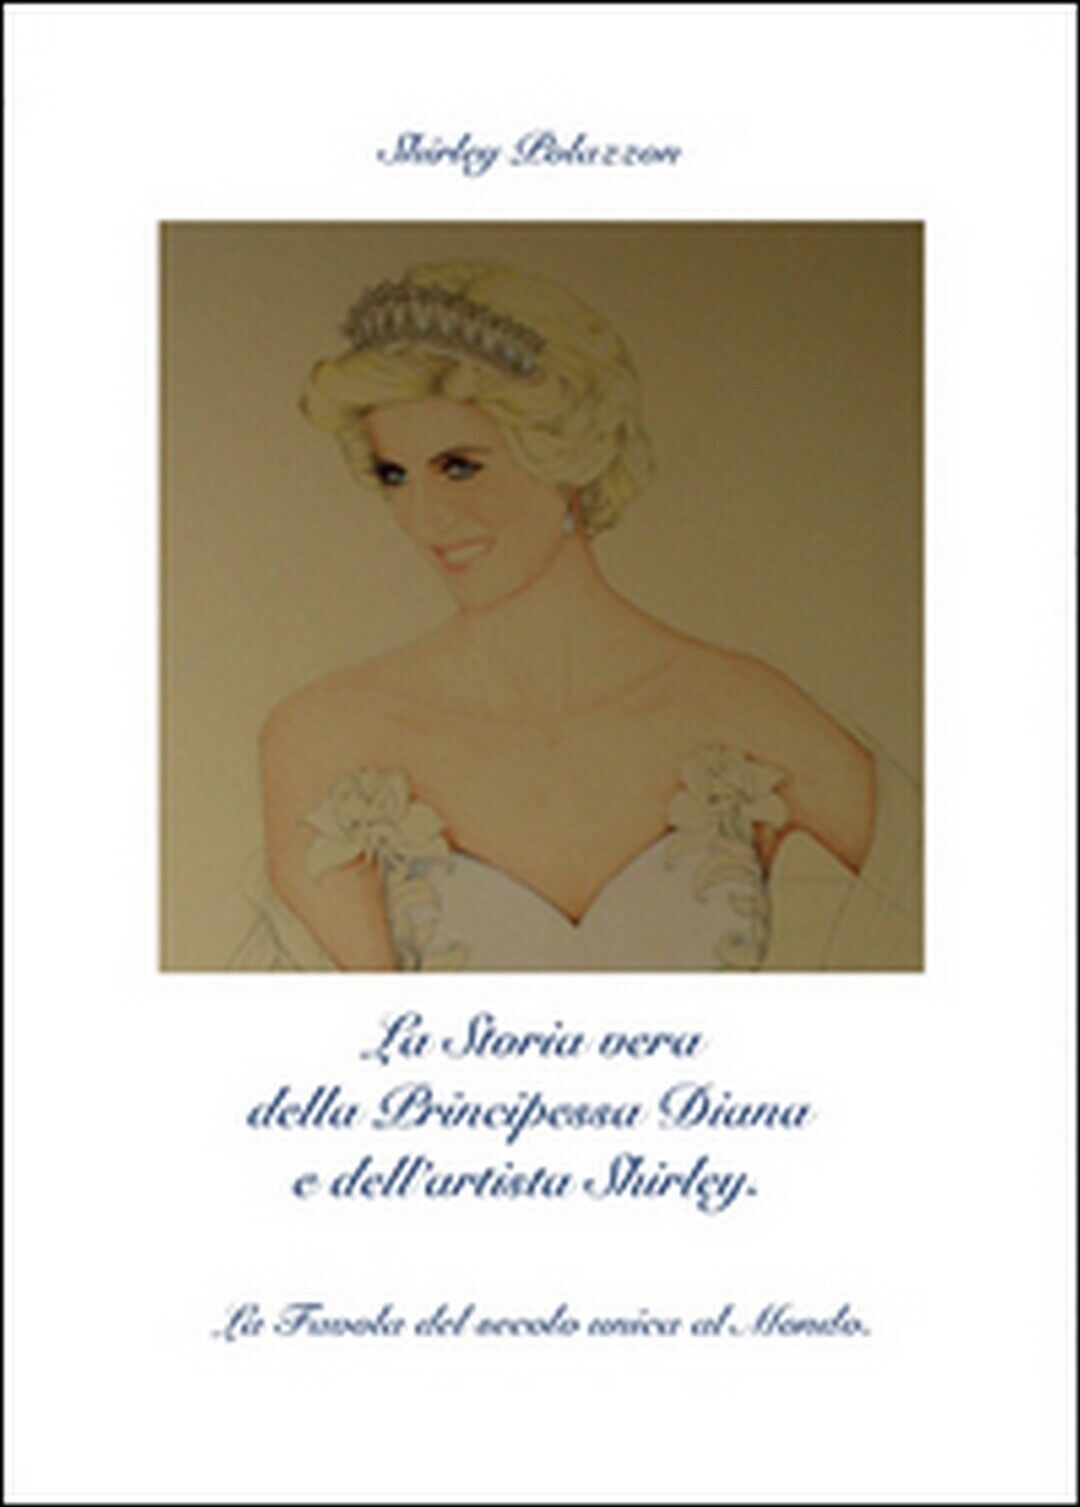 La storia vera della principessa Diana e delL'artista Shirley (S. Polazzon) libro usato